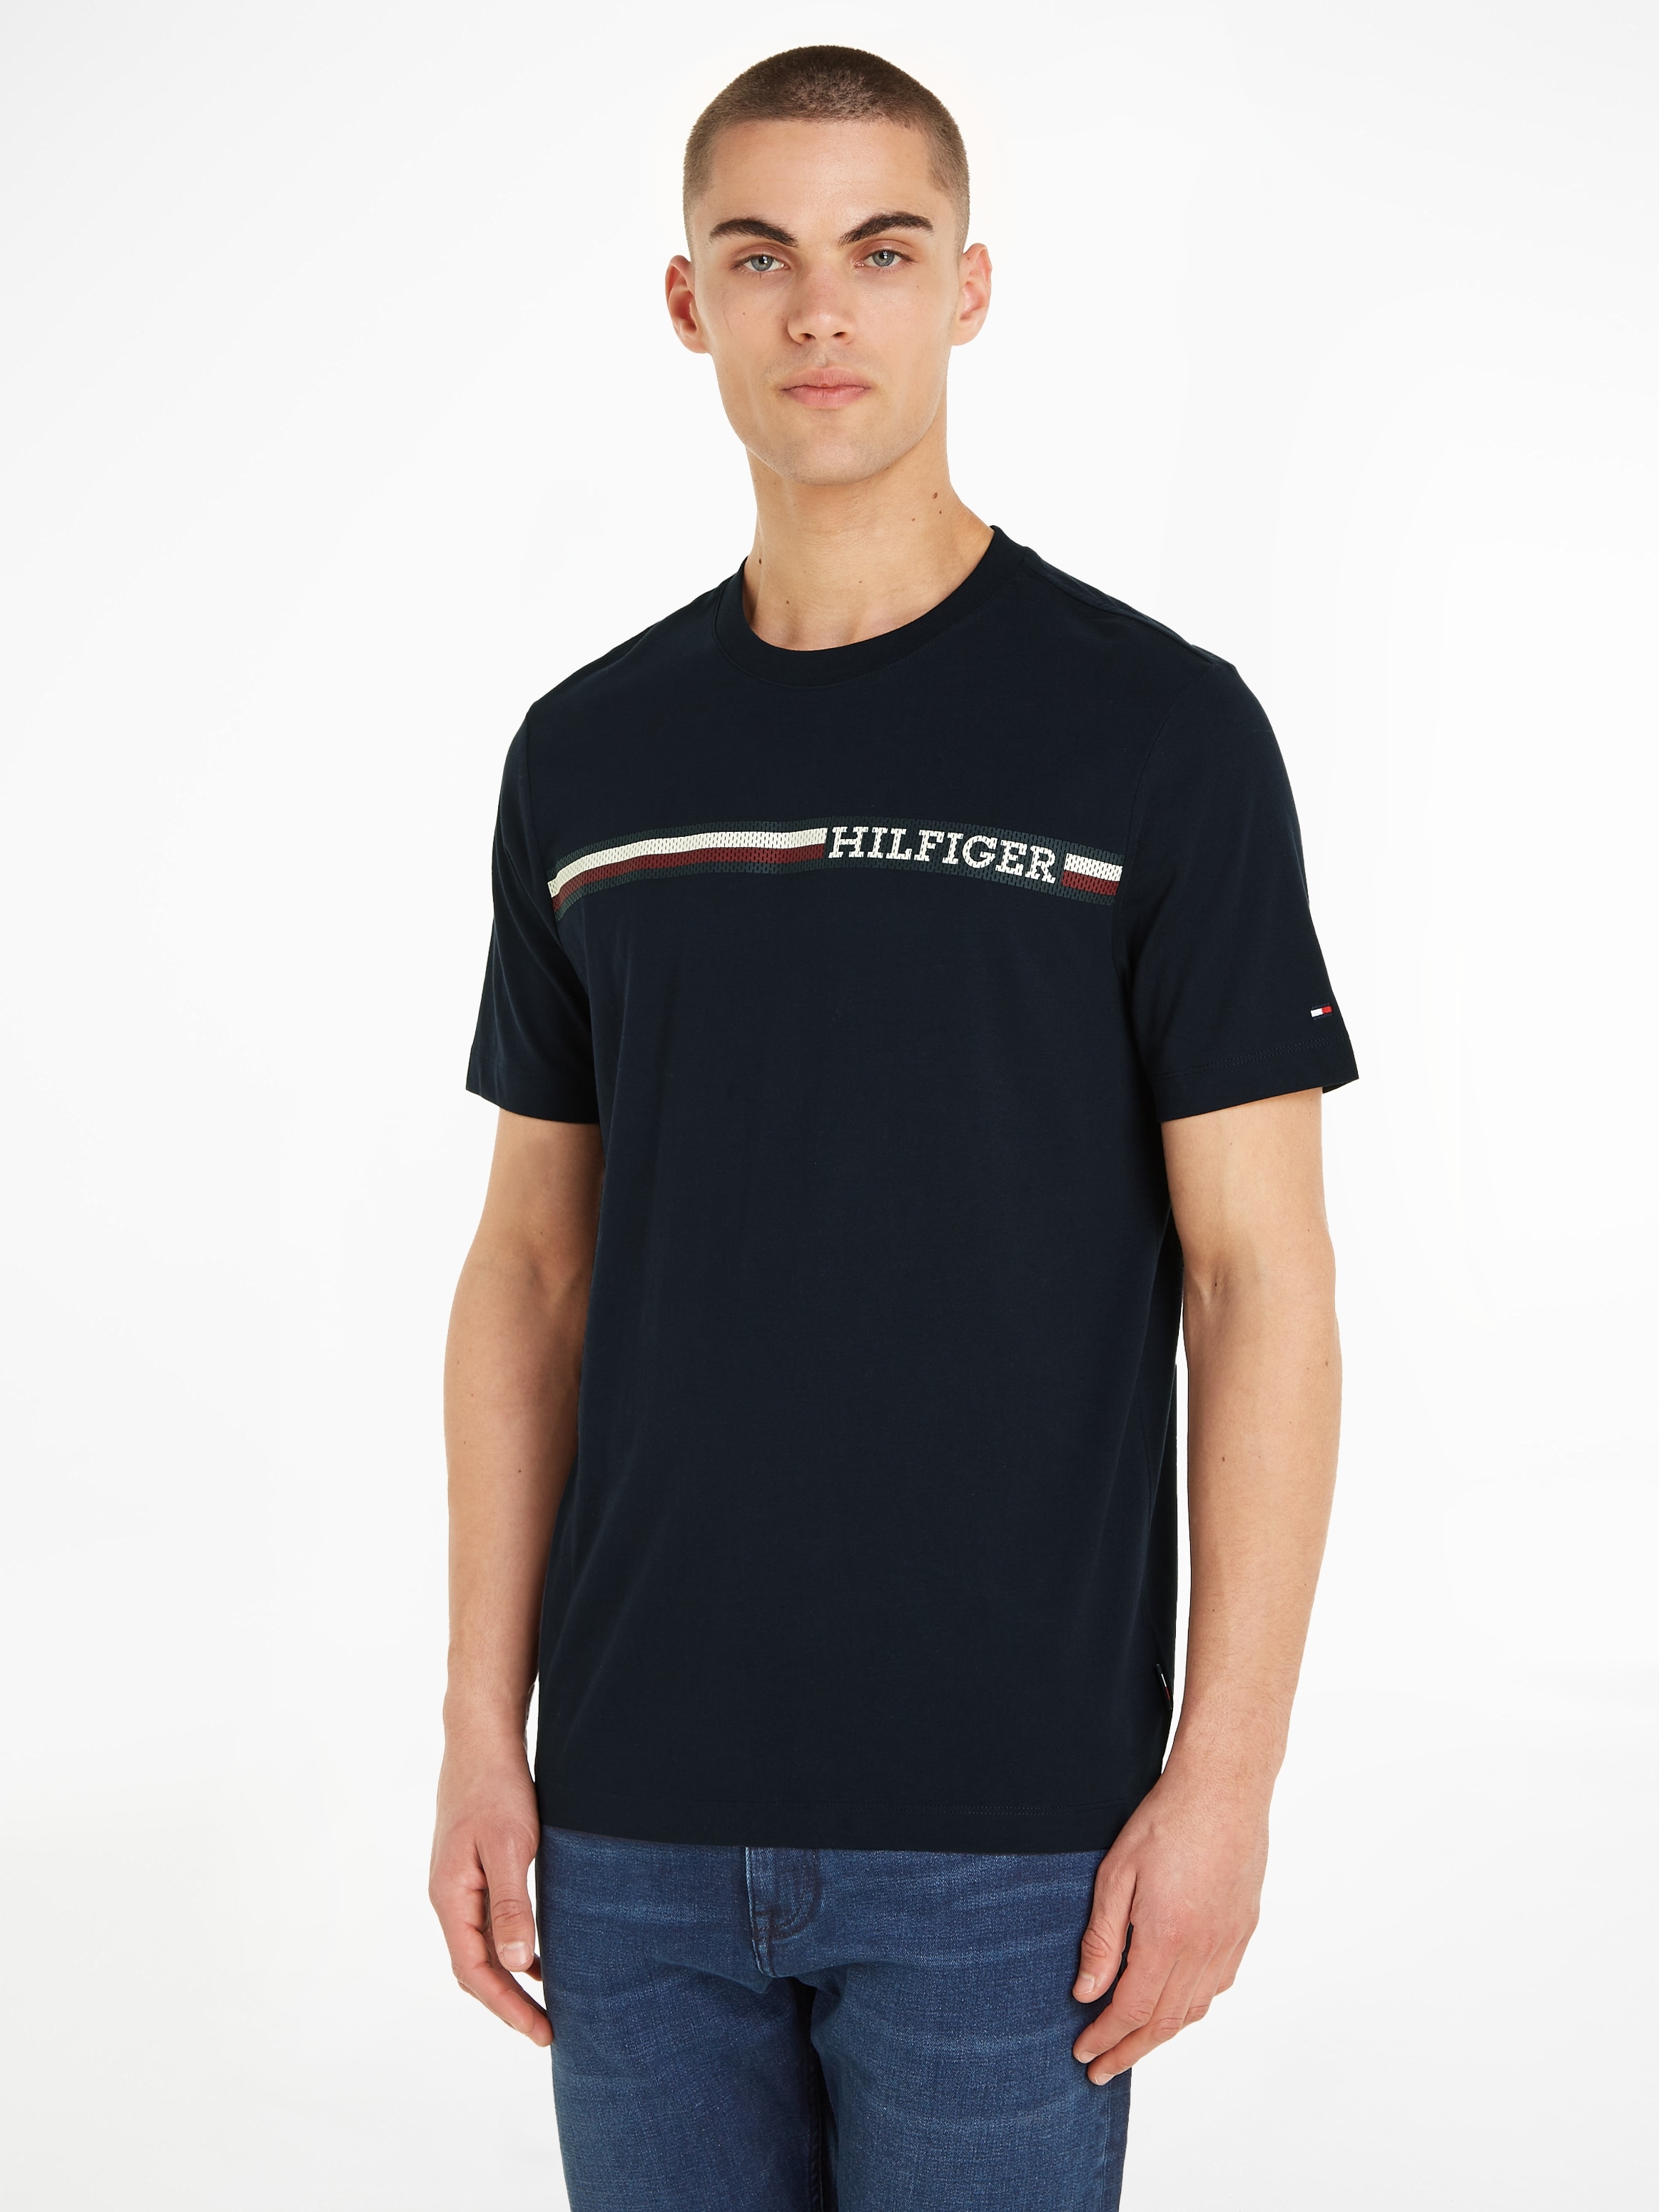 Tommy Hilfiger TEE«, STRIPE online T-Shirt »MONOTYPE kaufen CHEST mit Markenlogo